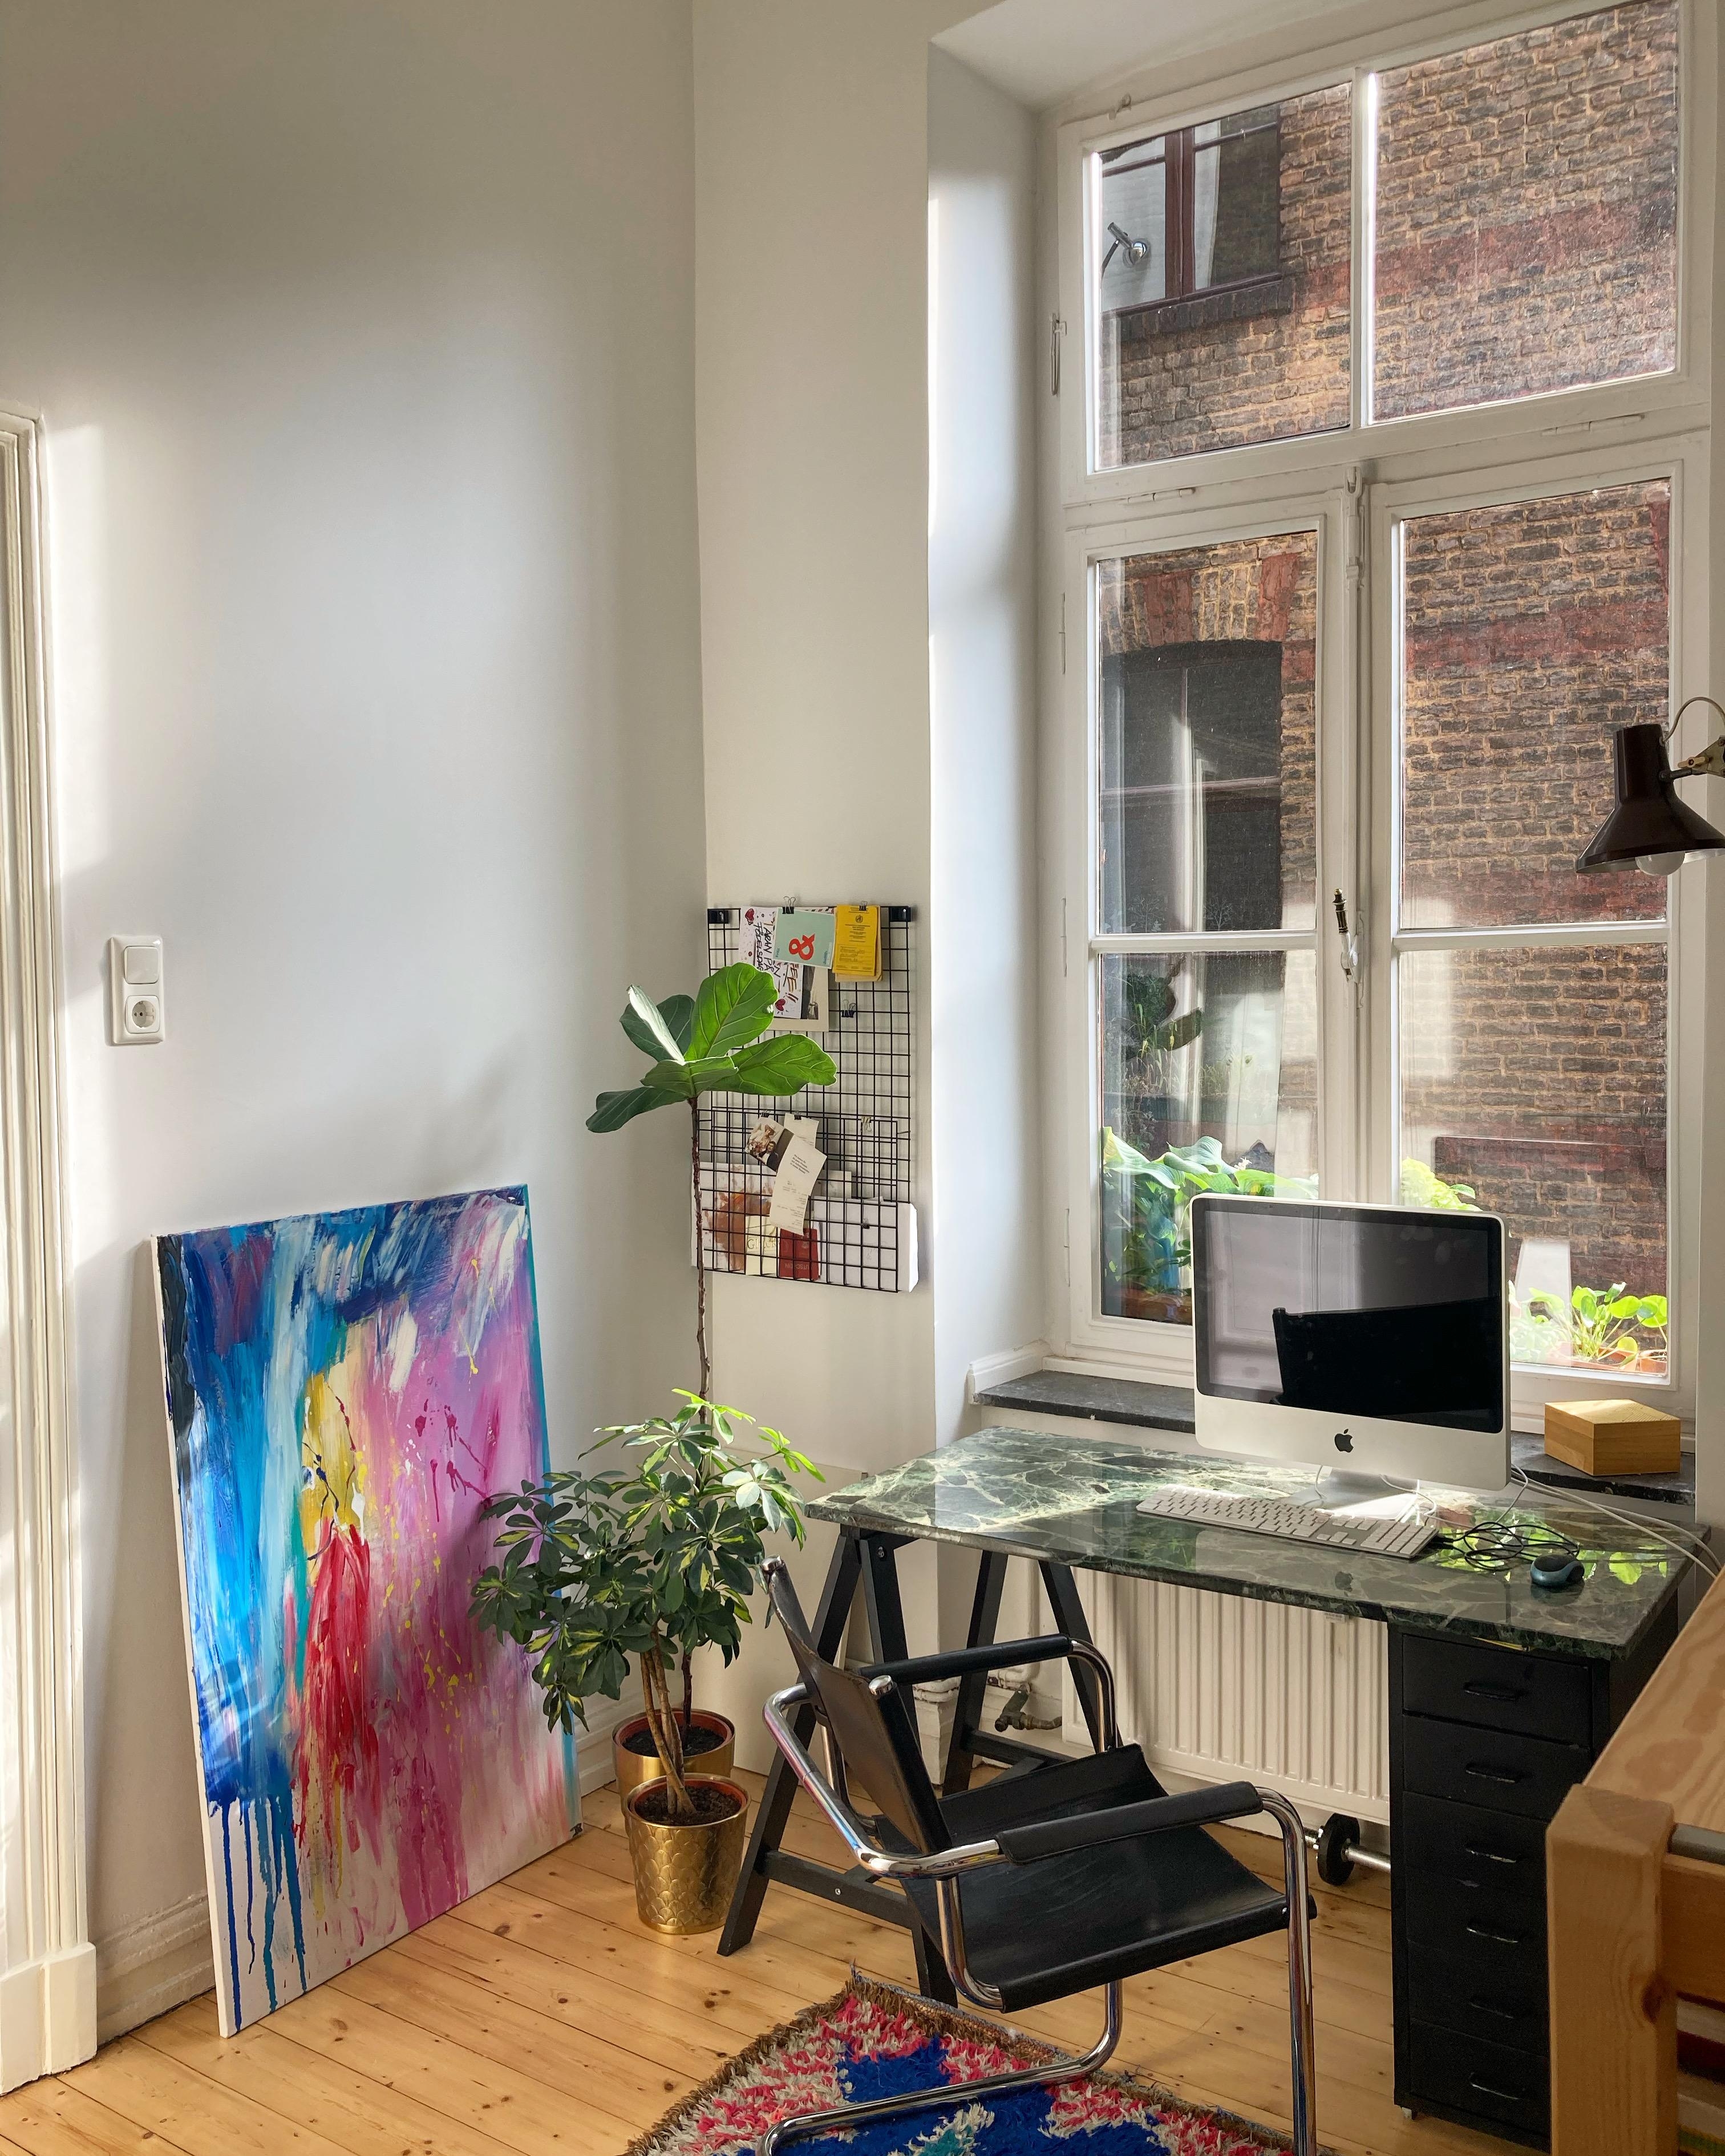 Home office view ☀️
#homeoffice#altbau#altbauliebe#pflanzenliebe#schreibtisch#sonnenlicht#colorfuldetails#colors#scandi